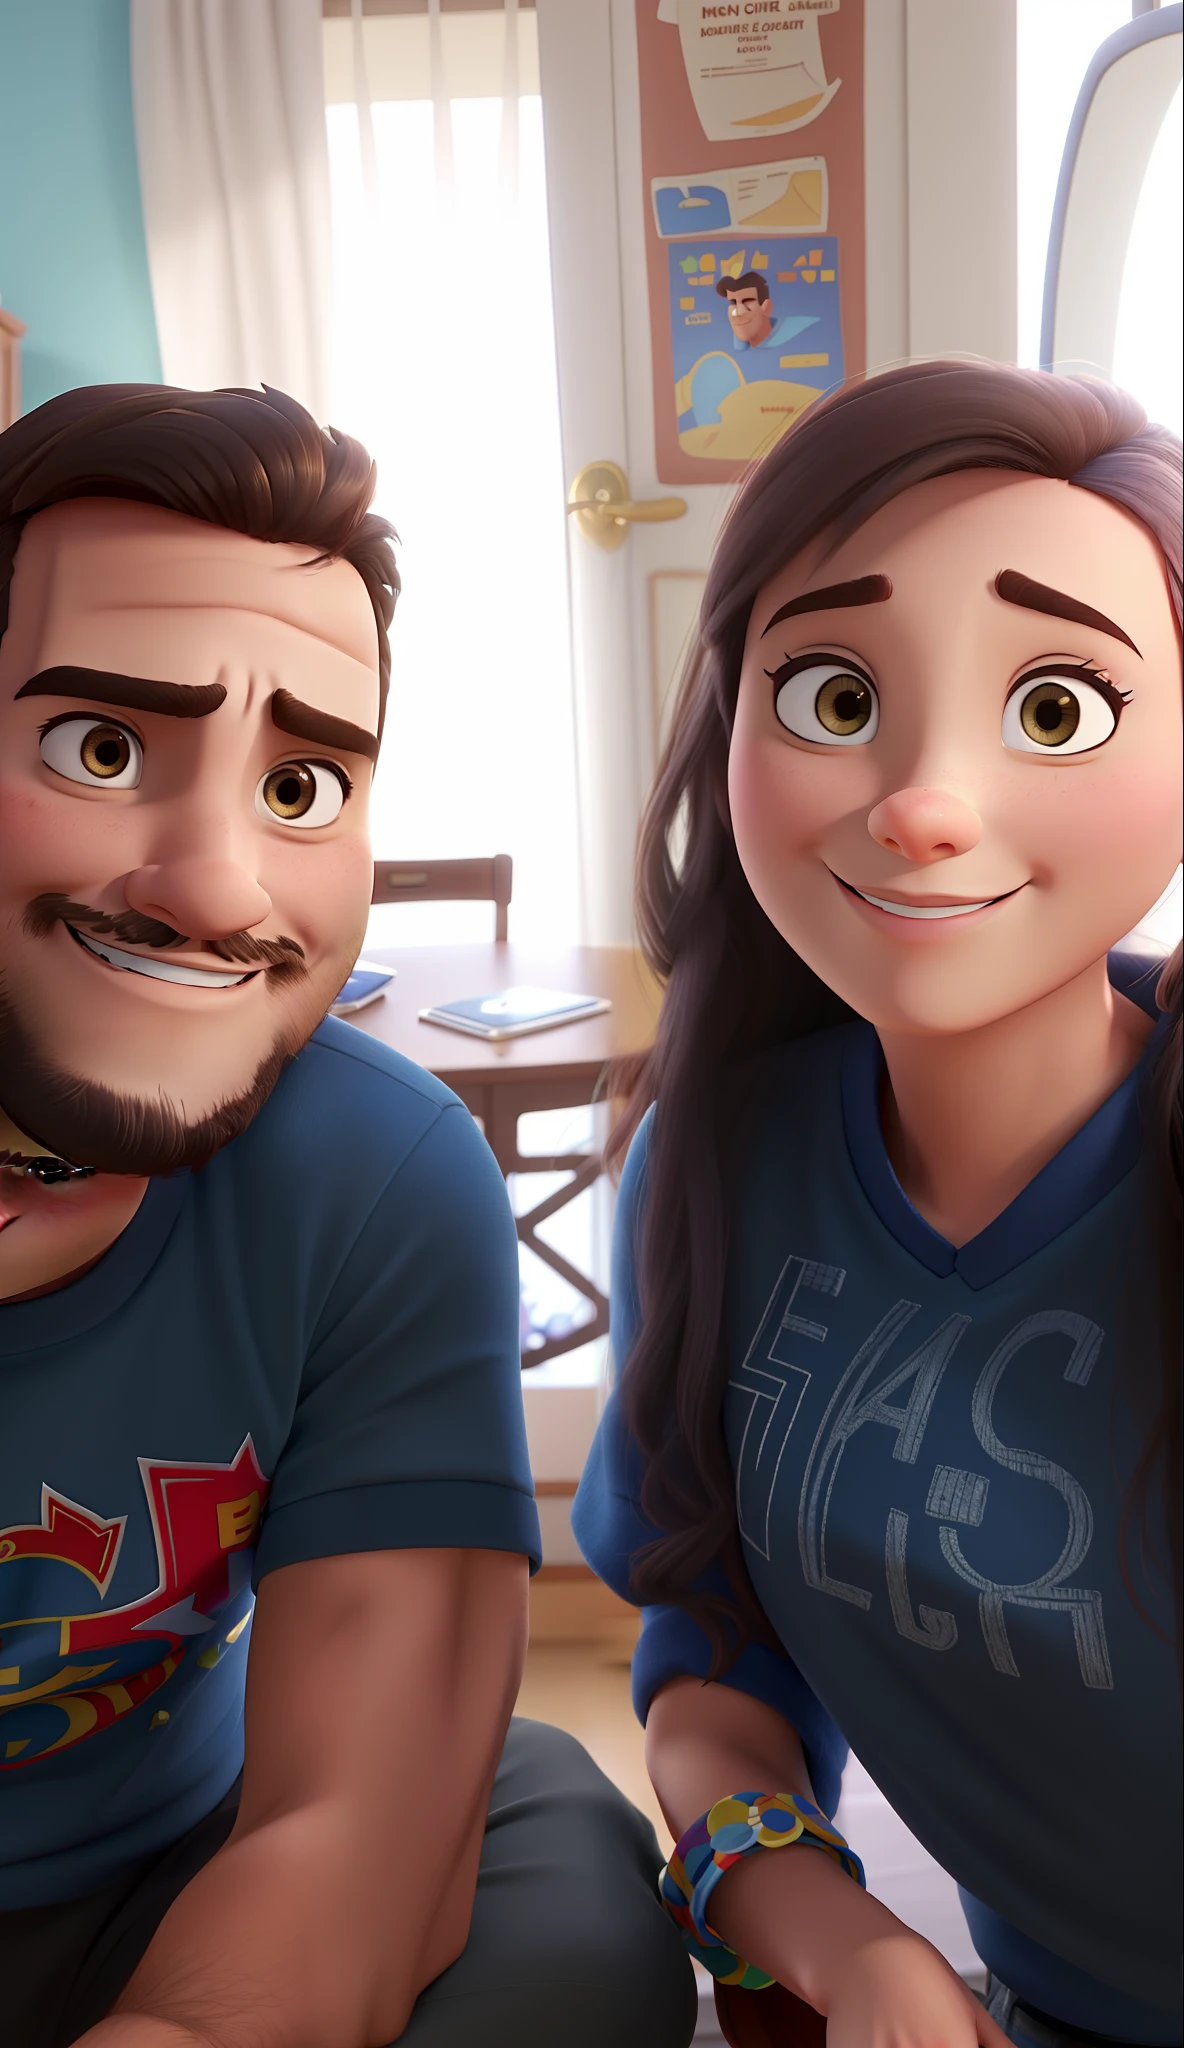 Paar aus Mann und Frau im Disney-Pixar-Stil, gute Qualität, Bessere Qualität